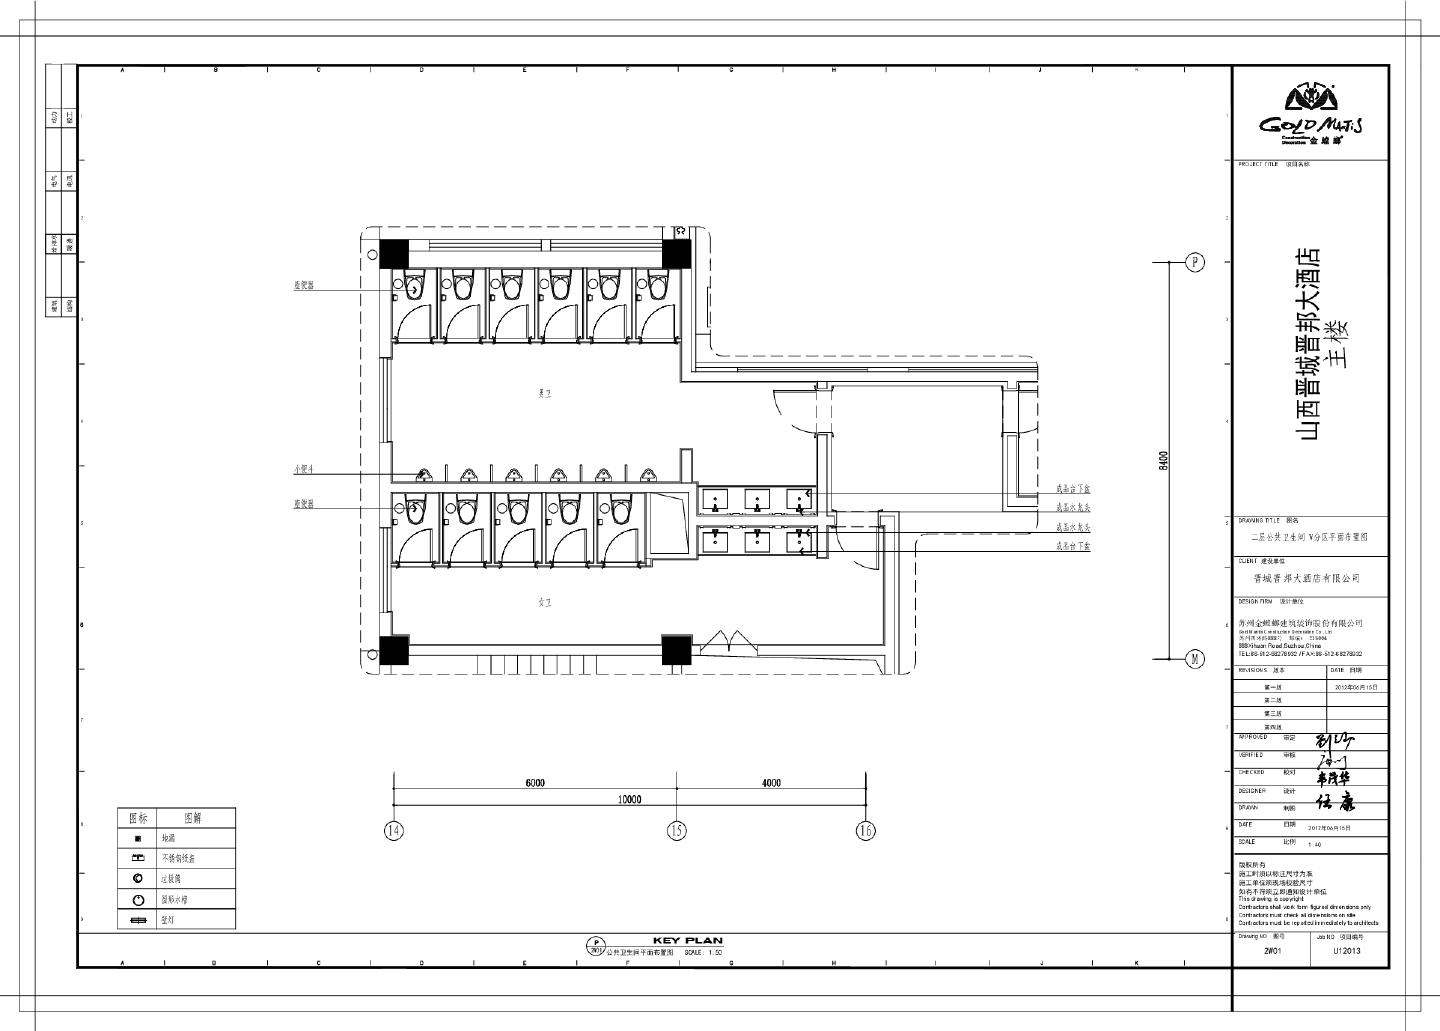 山西晋城晋邦大酒店主楼-二层公共卫生间 W分区装饰设计CAD图